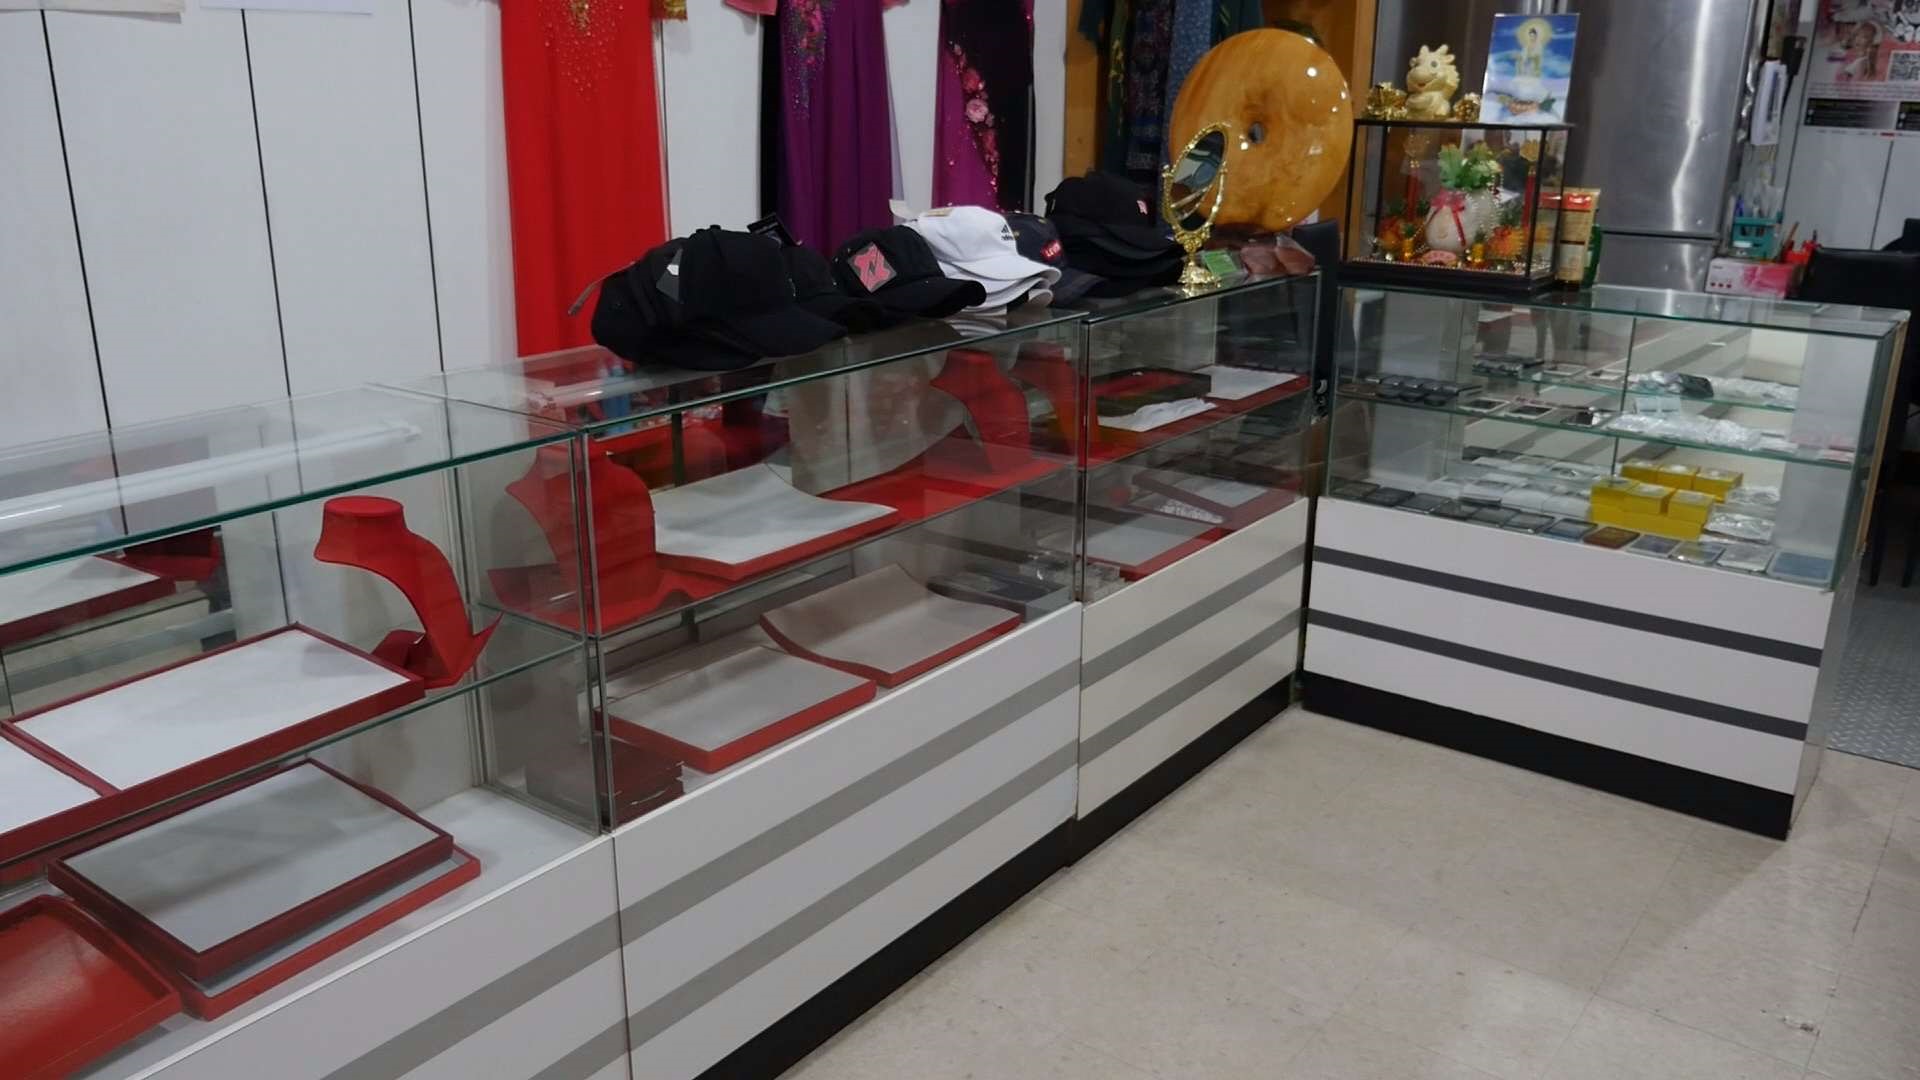 越南商店兼賣首飾遭偷竊  業者損失300萬